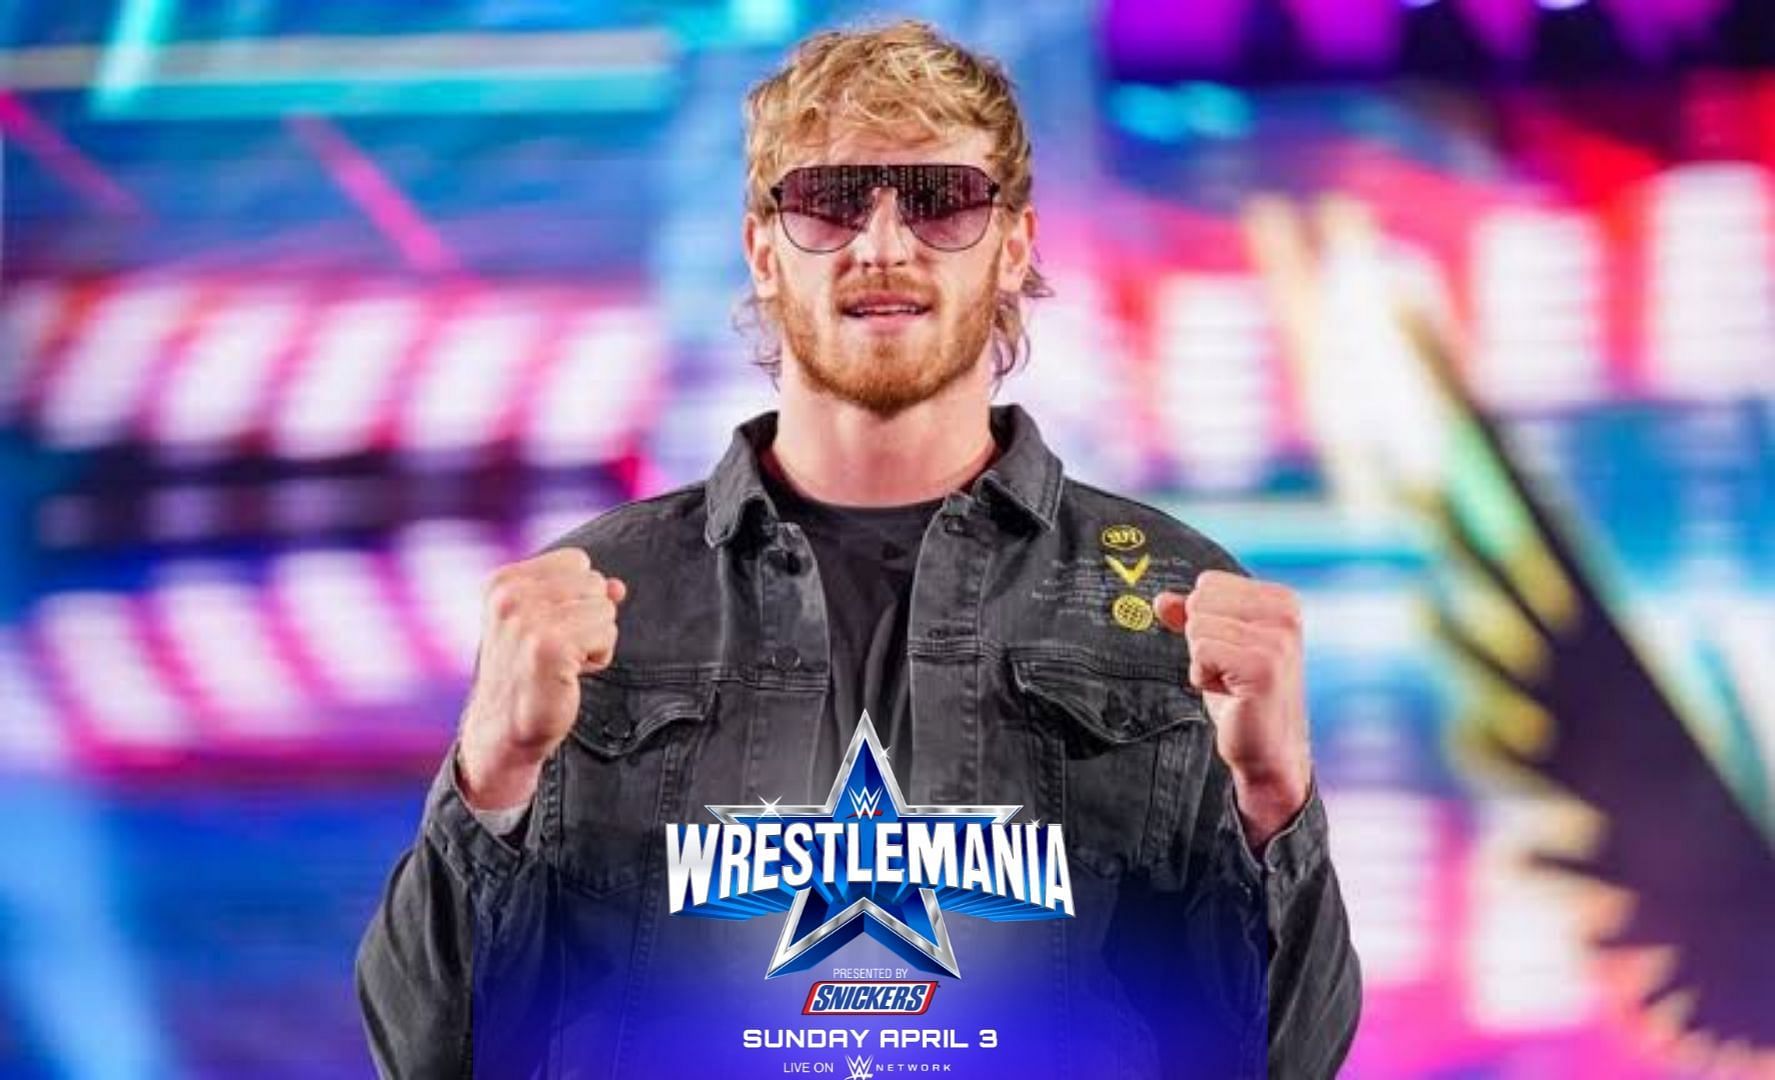 We might see Logan Paul at WWE WrestleMania 38 this year